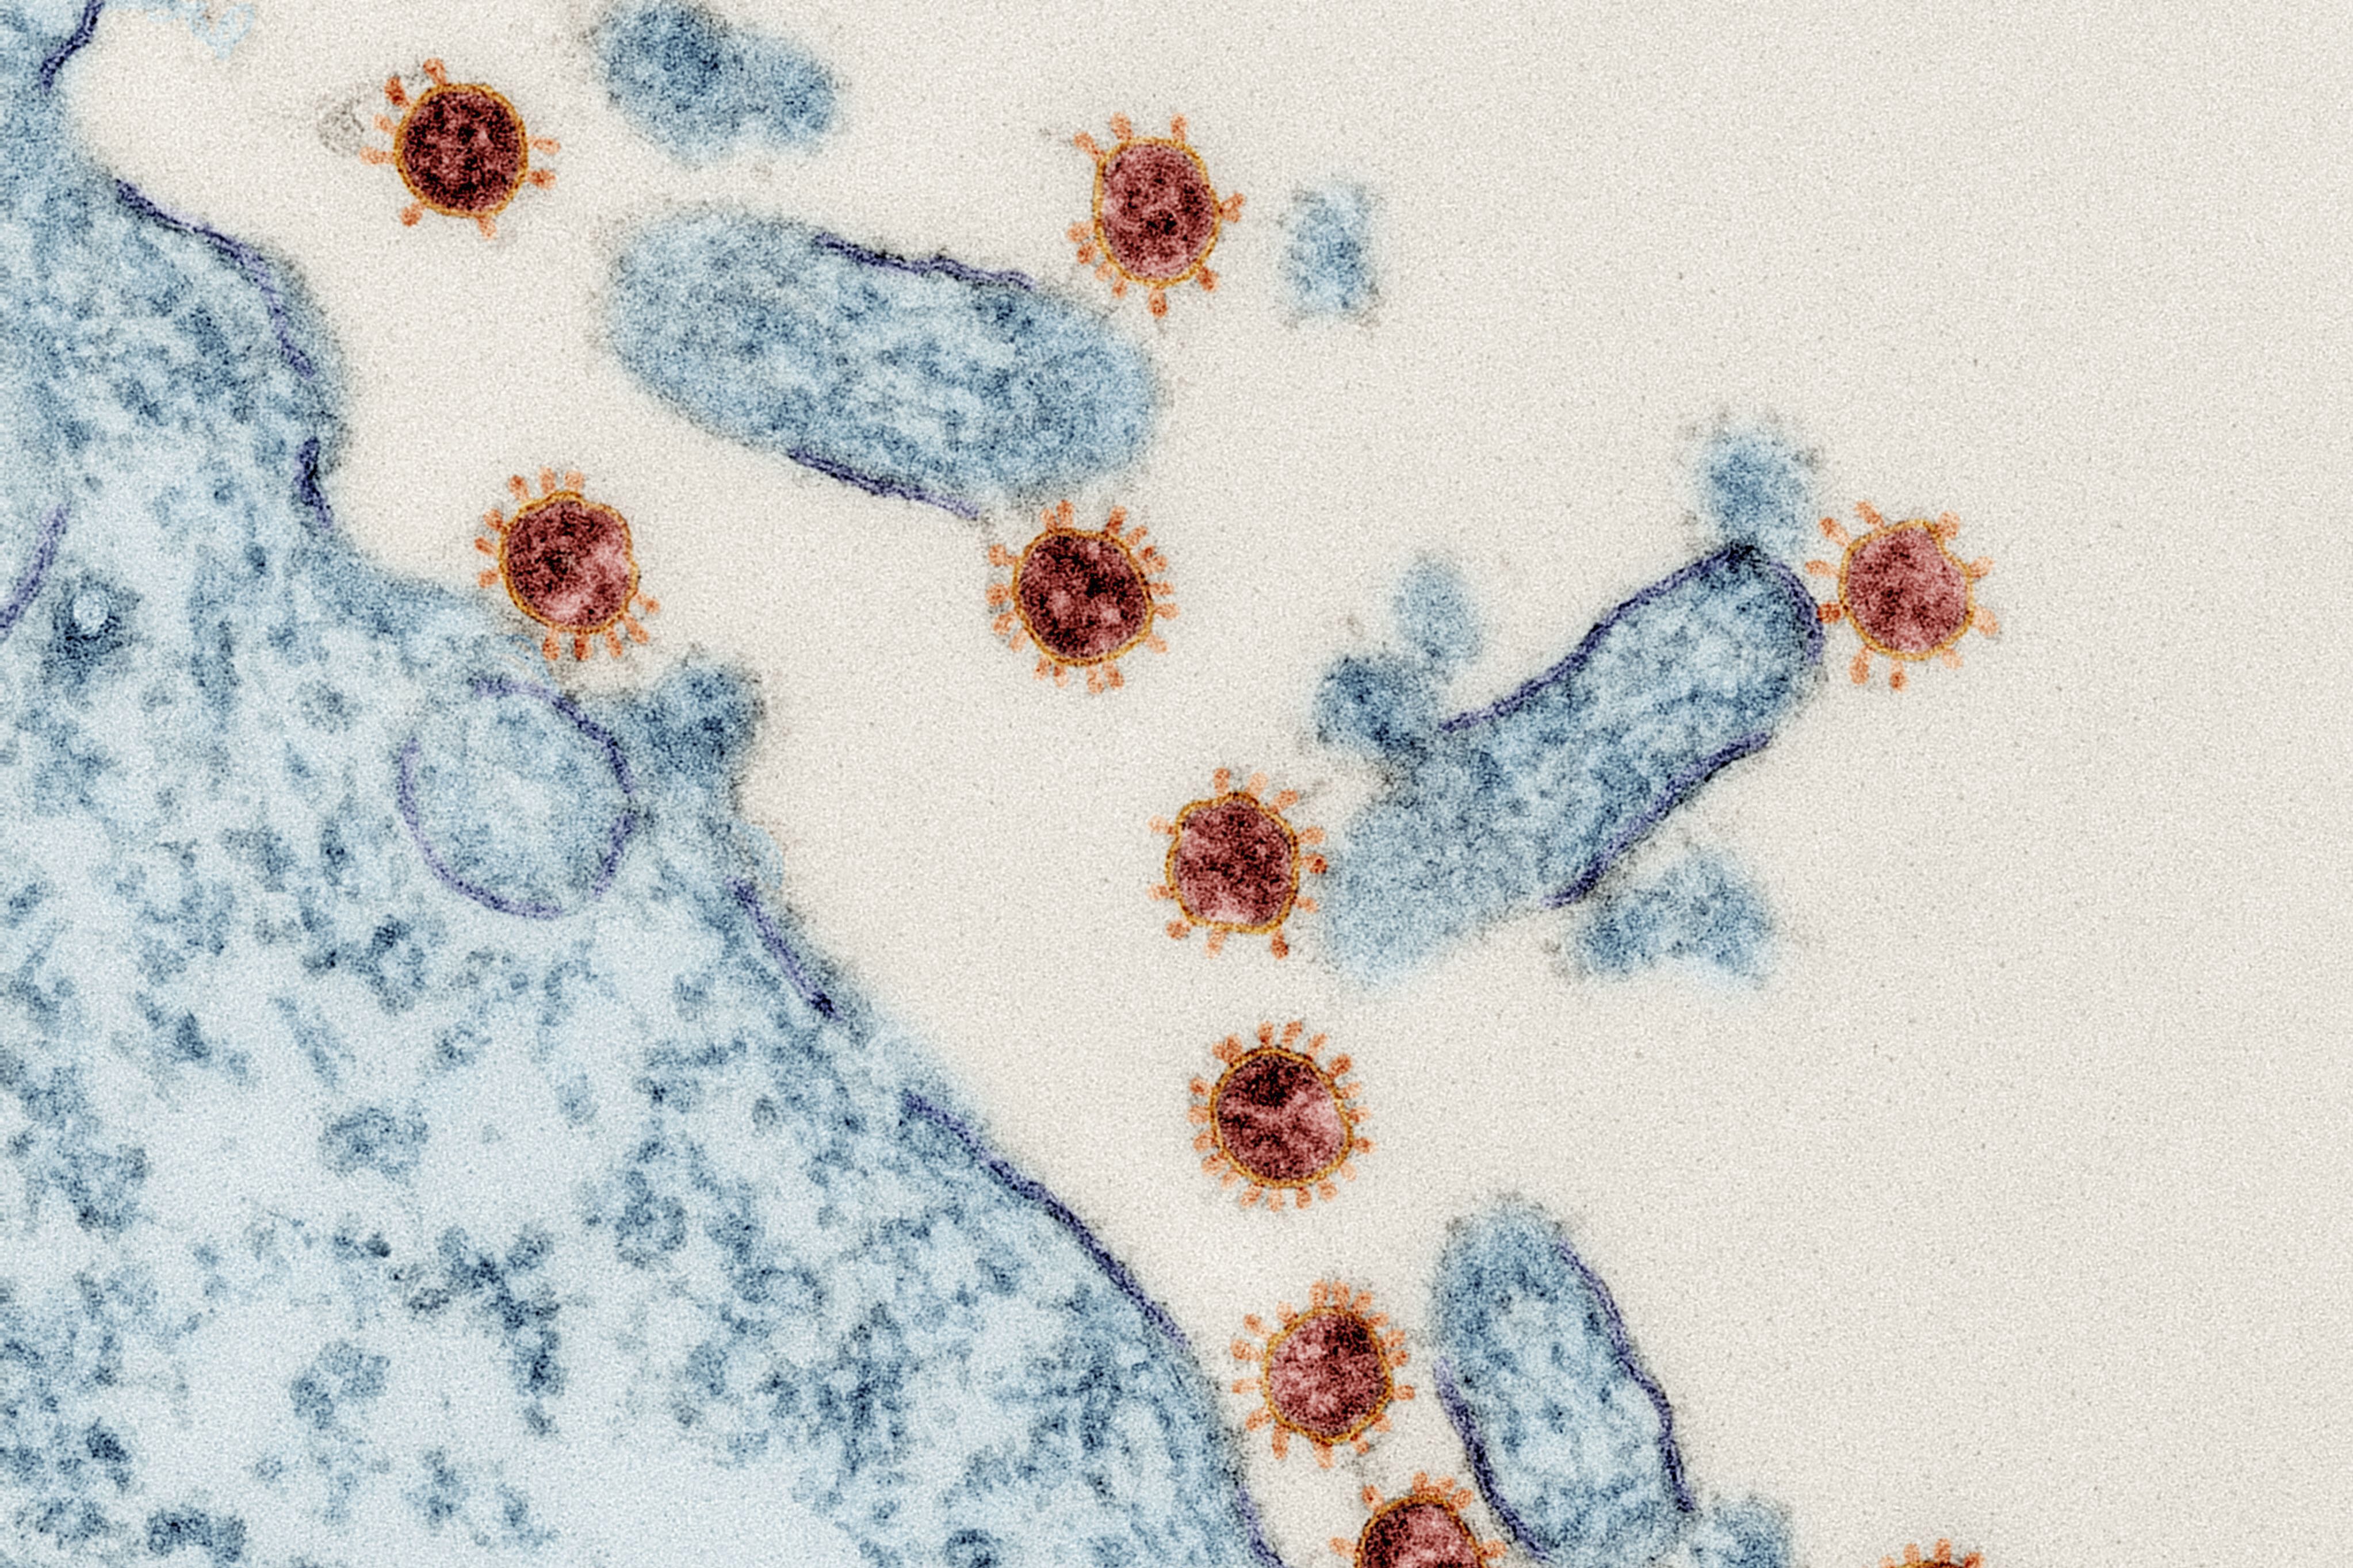 SARS-CoV-2 Viruspartikel befallen Gewebe